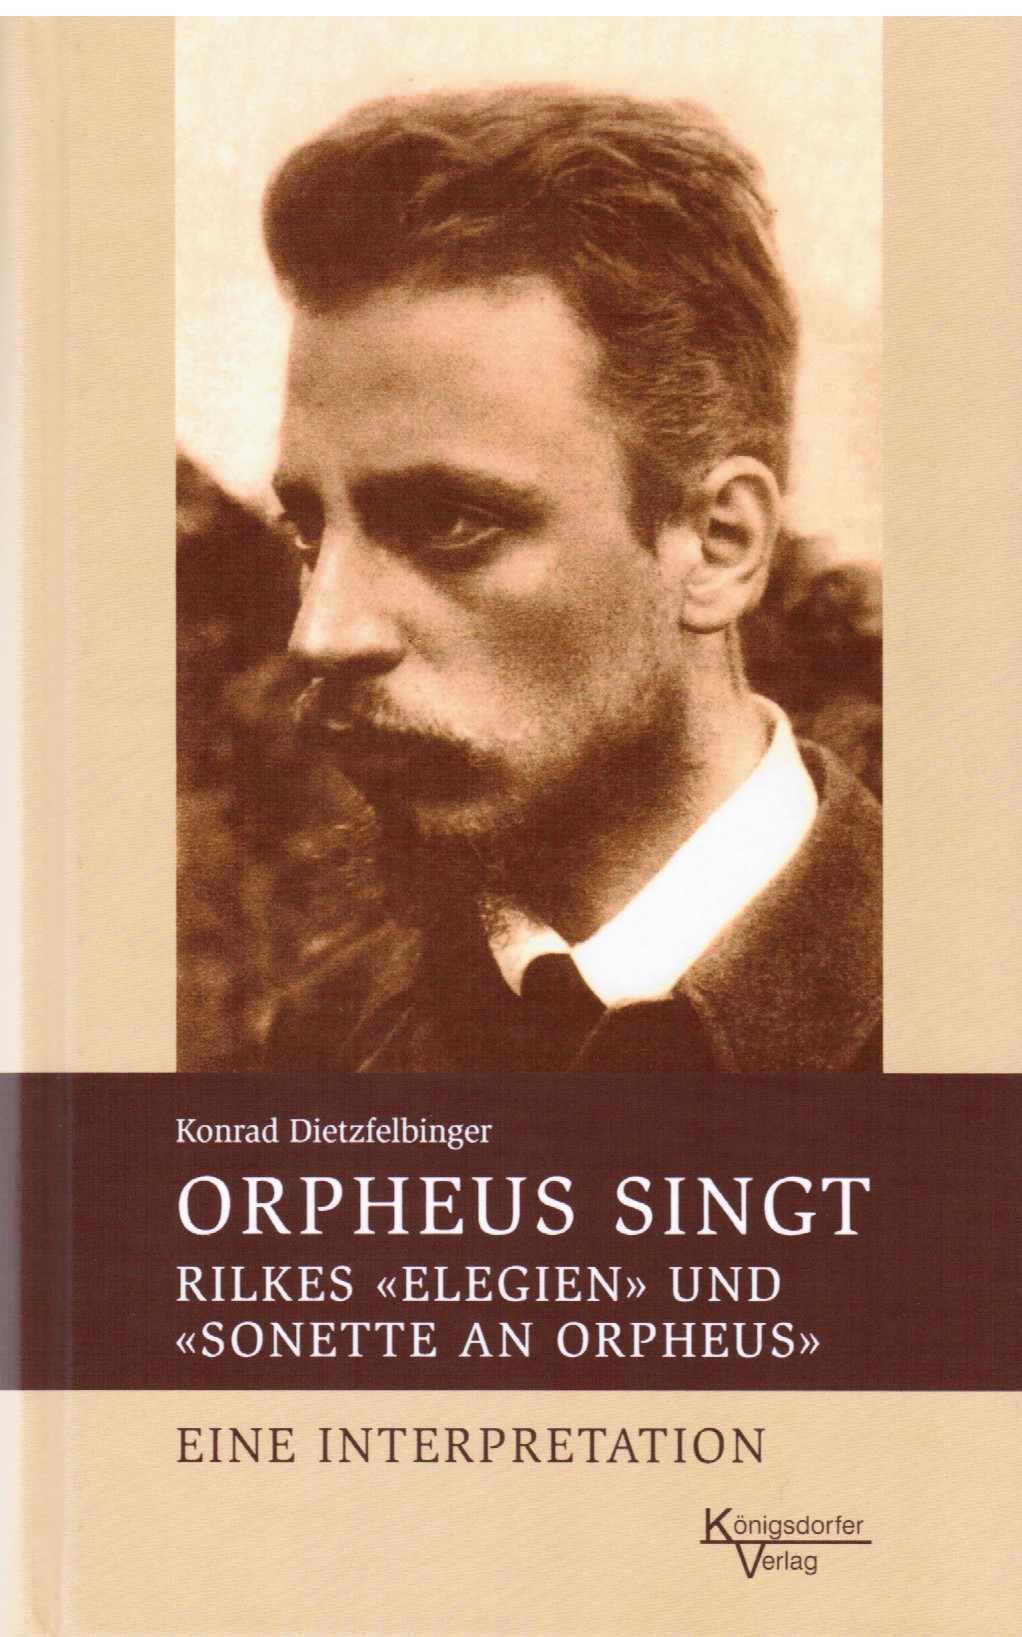 Orpheus singt - Rilkes "Elegien" und "Sonette an Orpheus" 